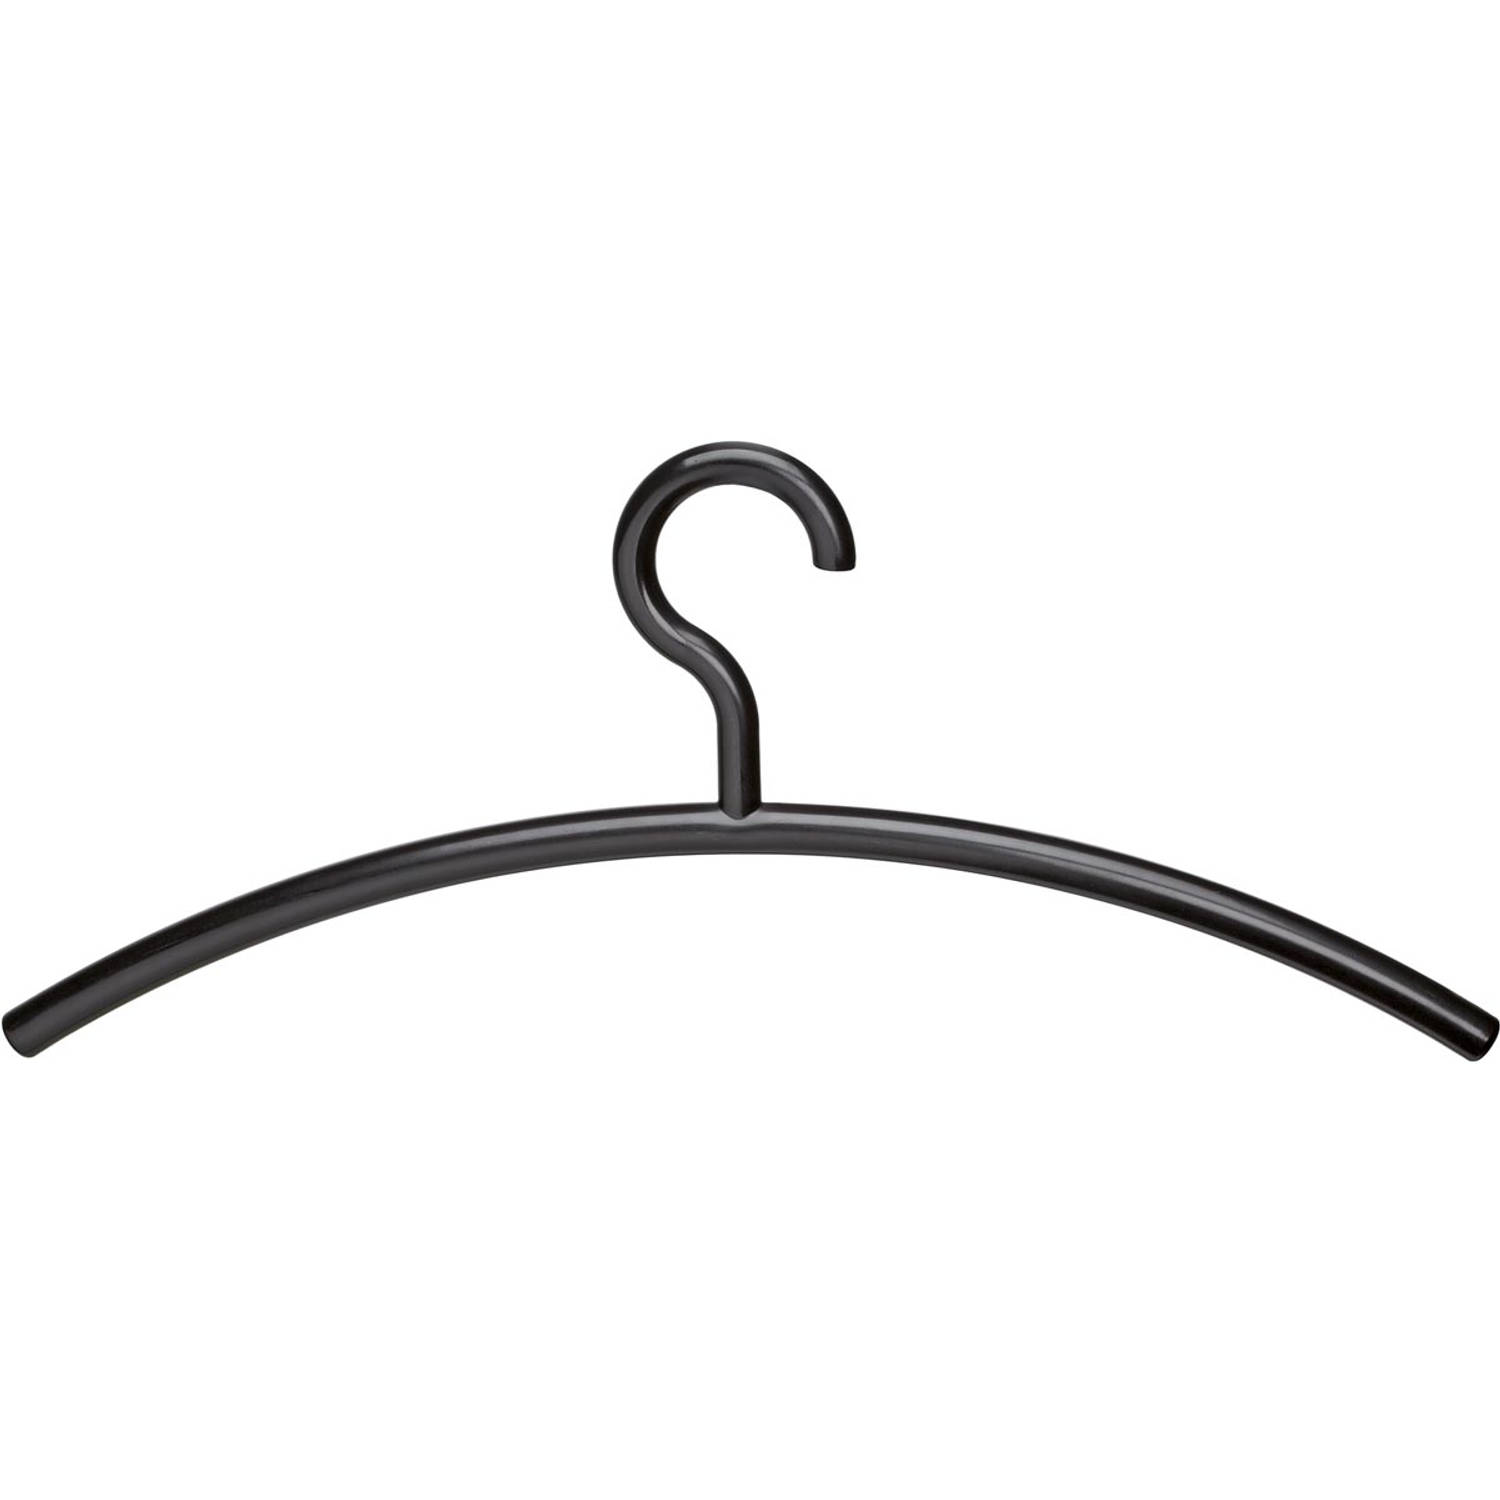 Maul kledinghanger, uit plastic, zwart, pak van 5 stuks 7 stuks